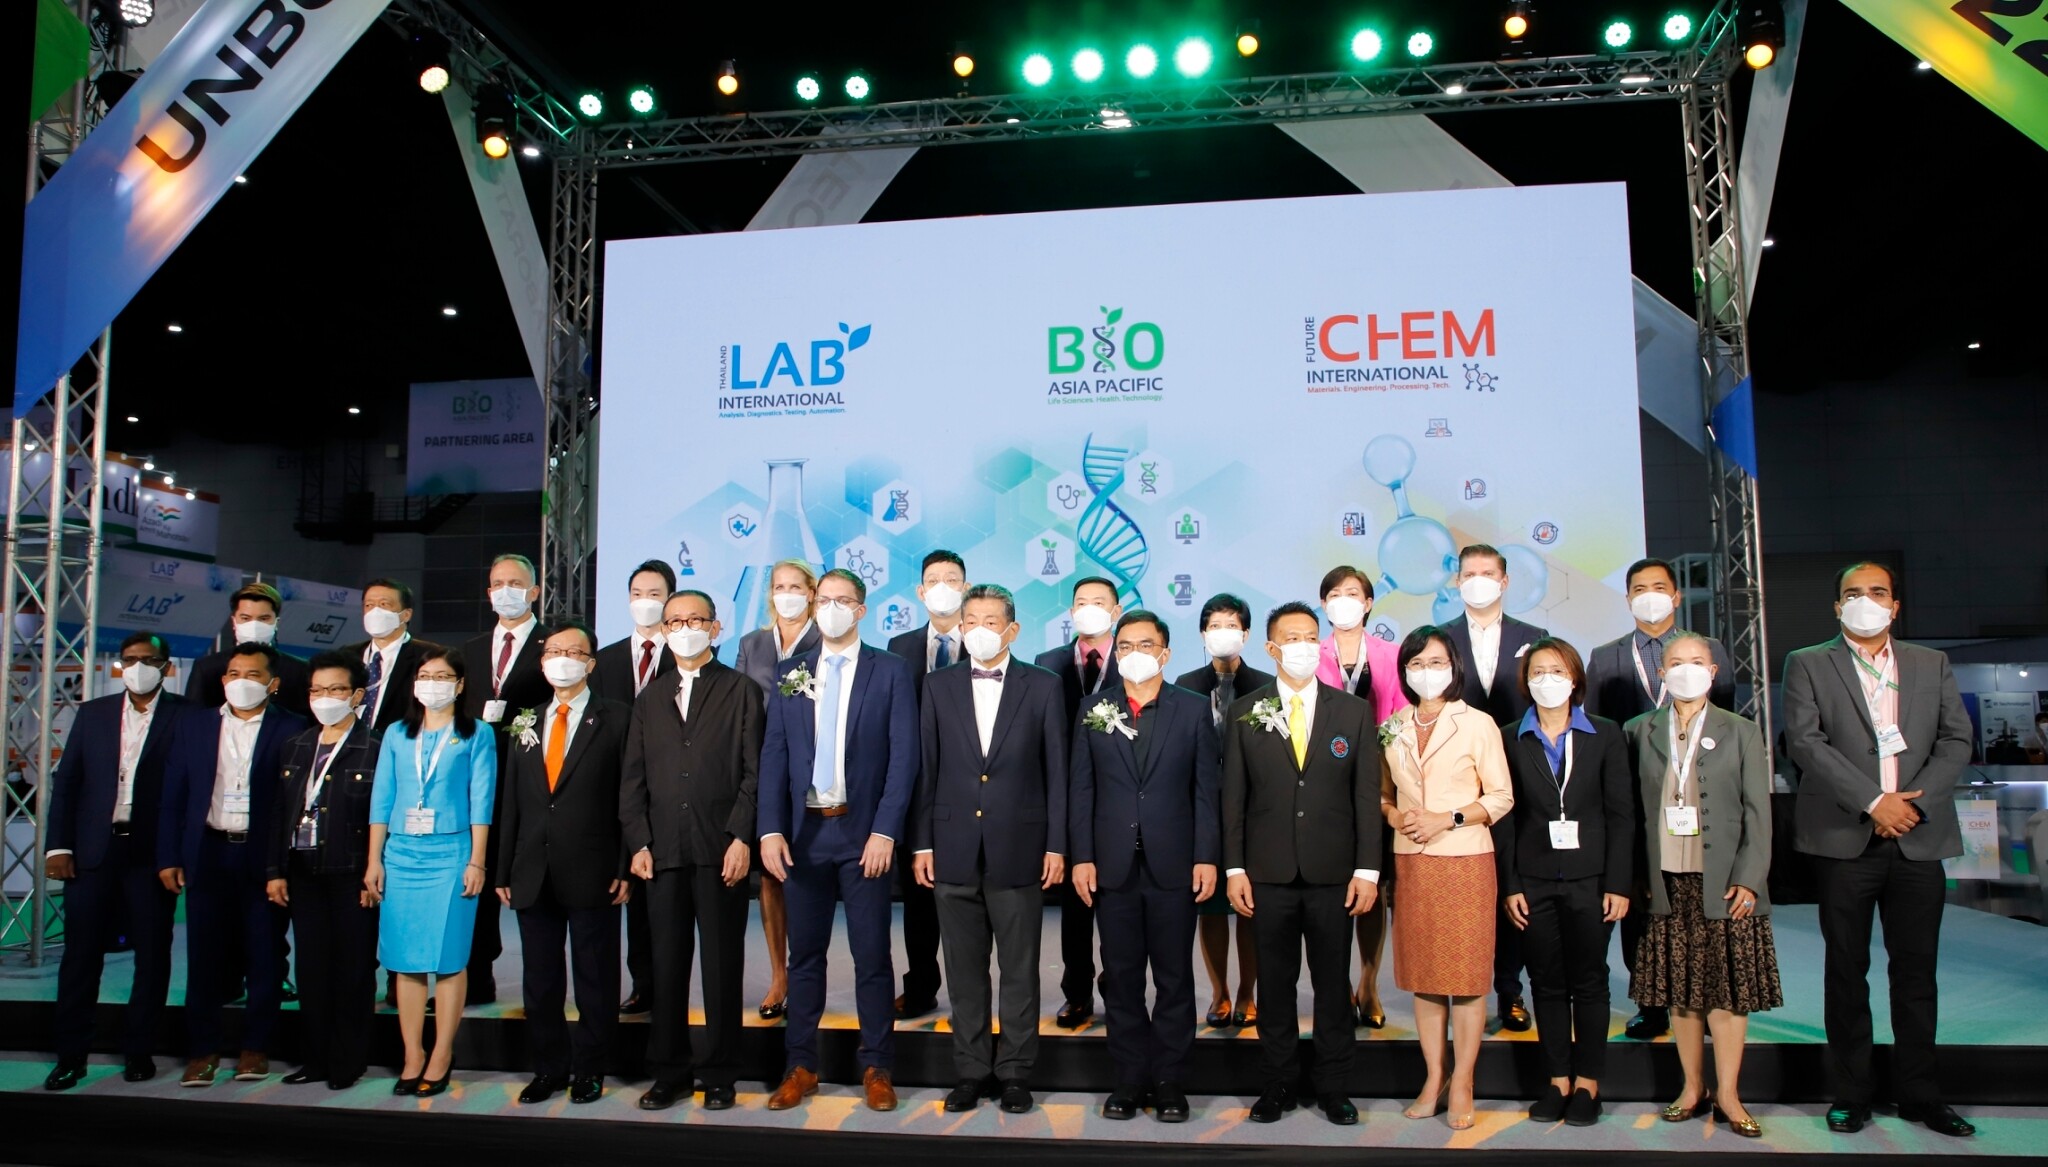 วว. ร่วมพิธีเปิดงานเทคโนโลยีเครื่องมือห้องปฏิบัติการทางวิทยาศาสตร์ชั้นนำในภูมิภาคเอเชีย Thailand LAB INTERNATIONAL 2022 , Bio Asia Pacific 2022, FutureCHEM INTERNATIONAL 2022